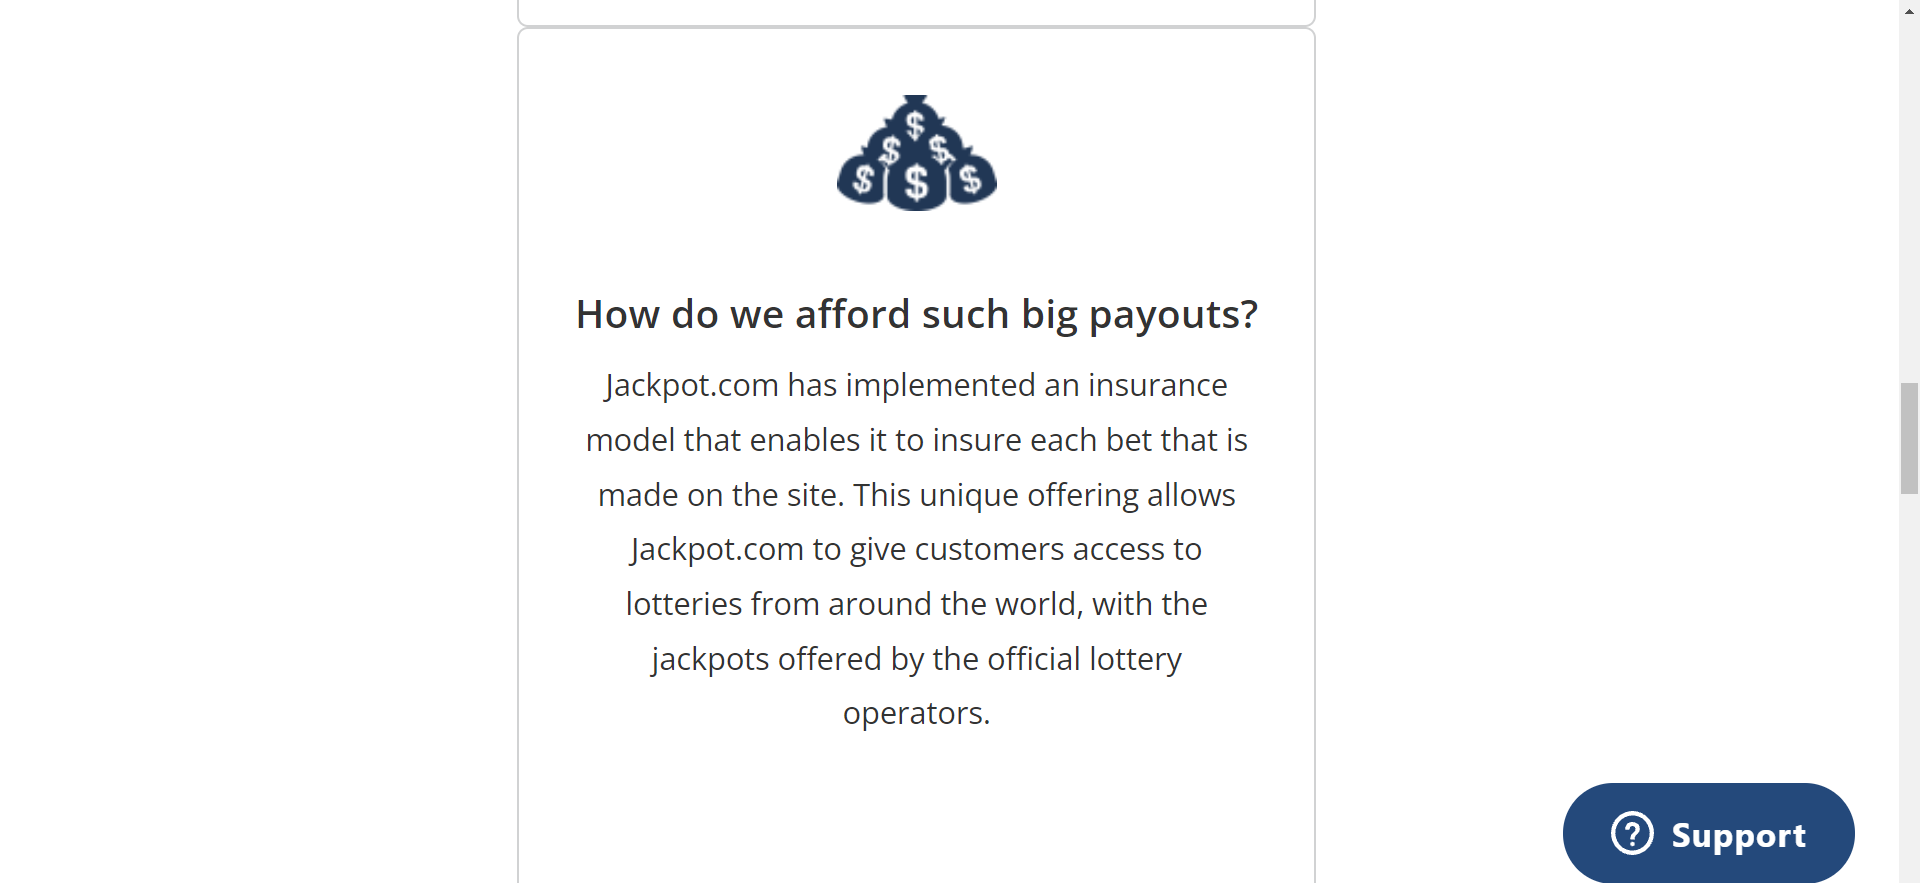 Jackpot.com Payment Plans